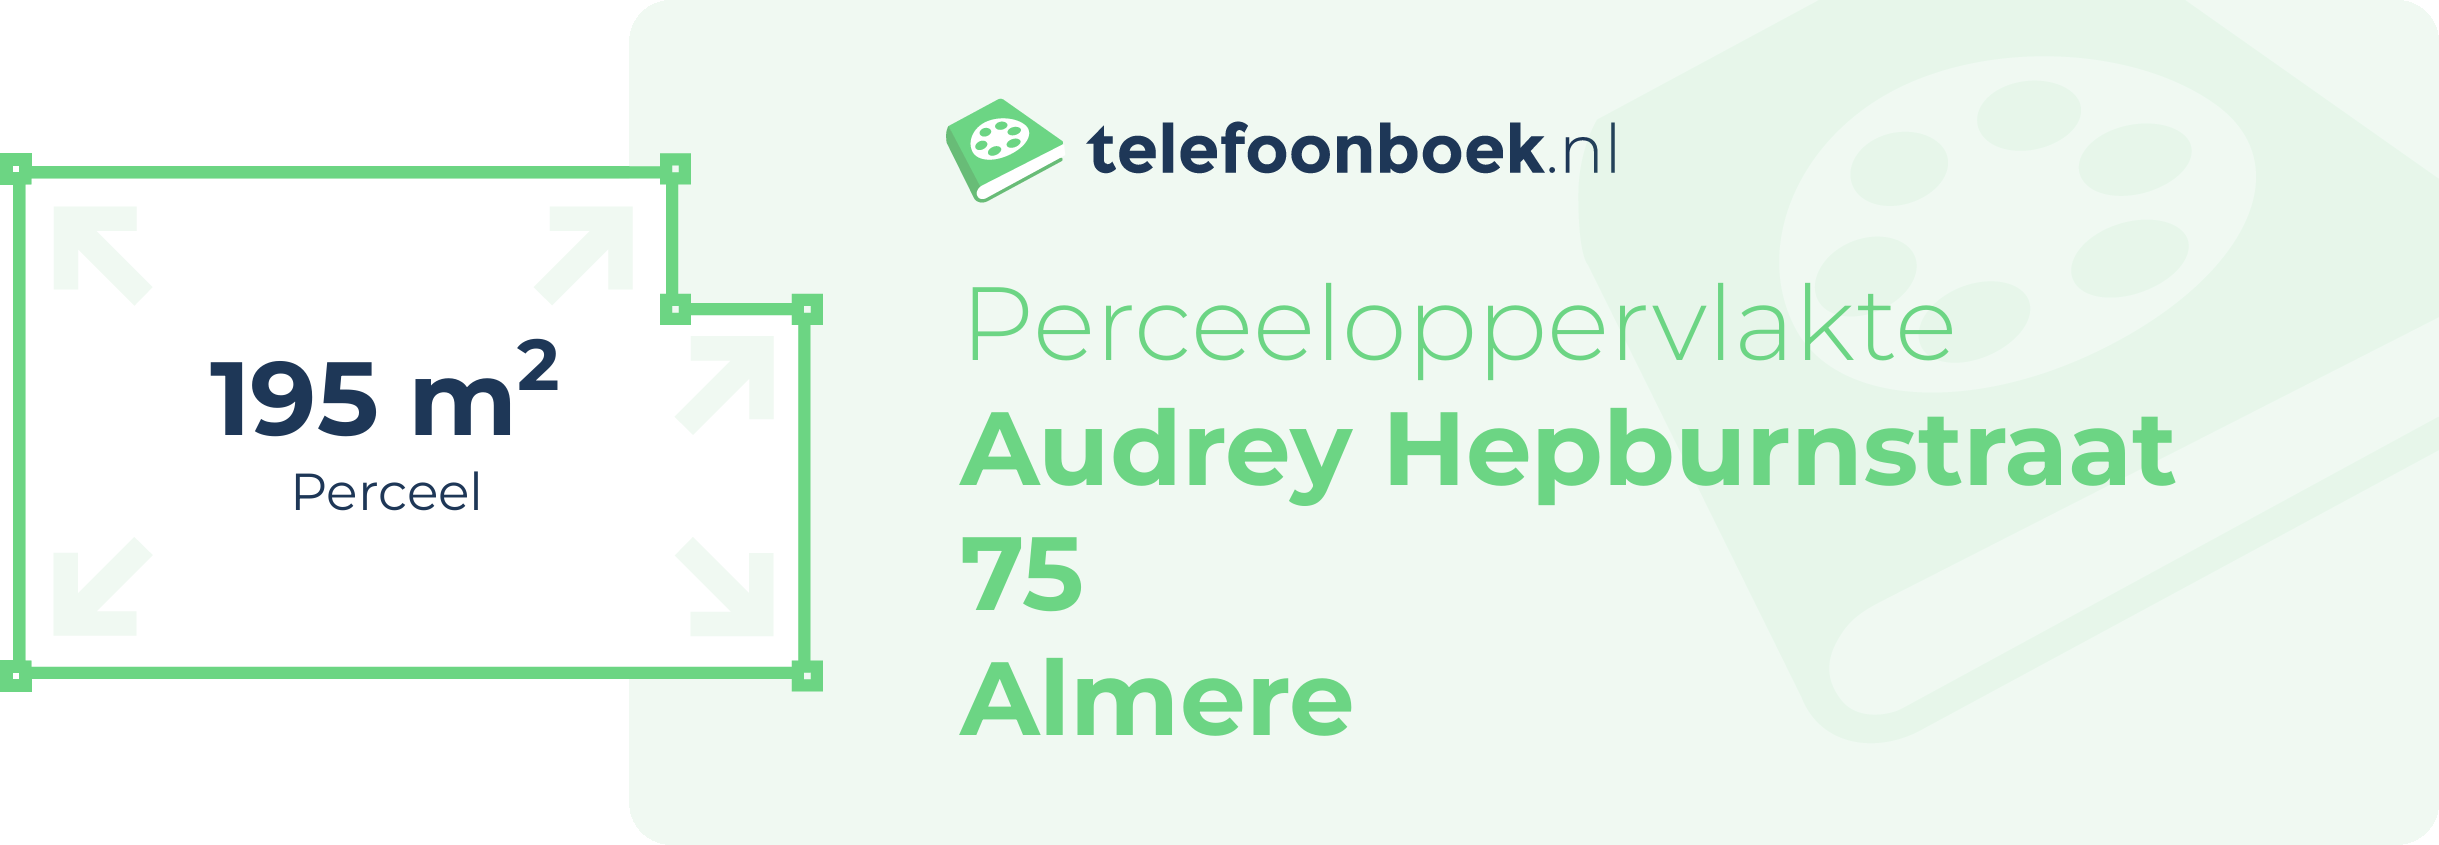 Perceeloppervlakte Audrey Hepburnstraat 75 Almere